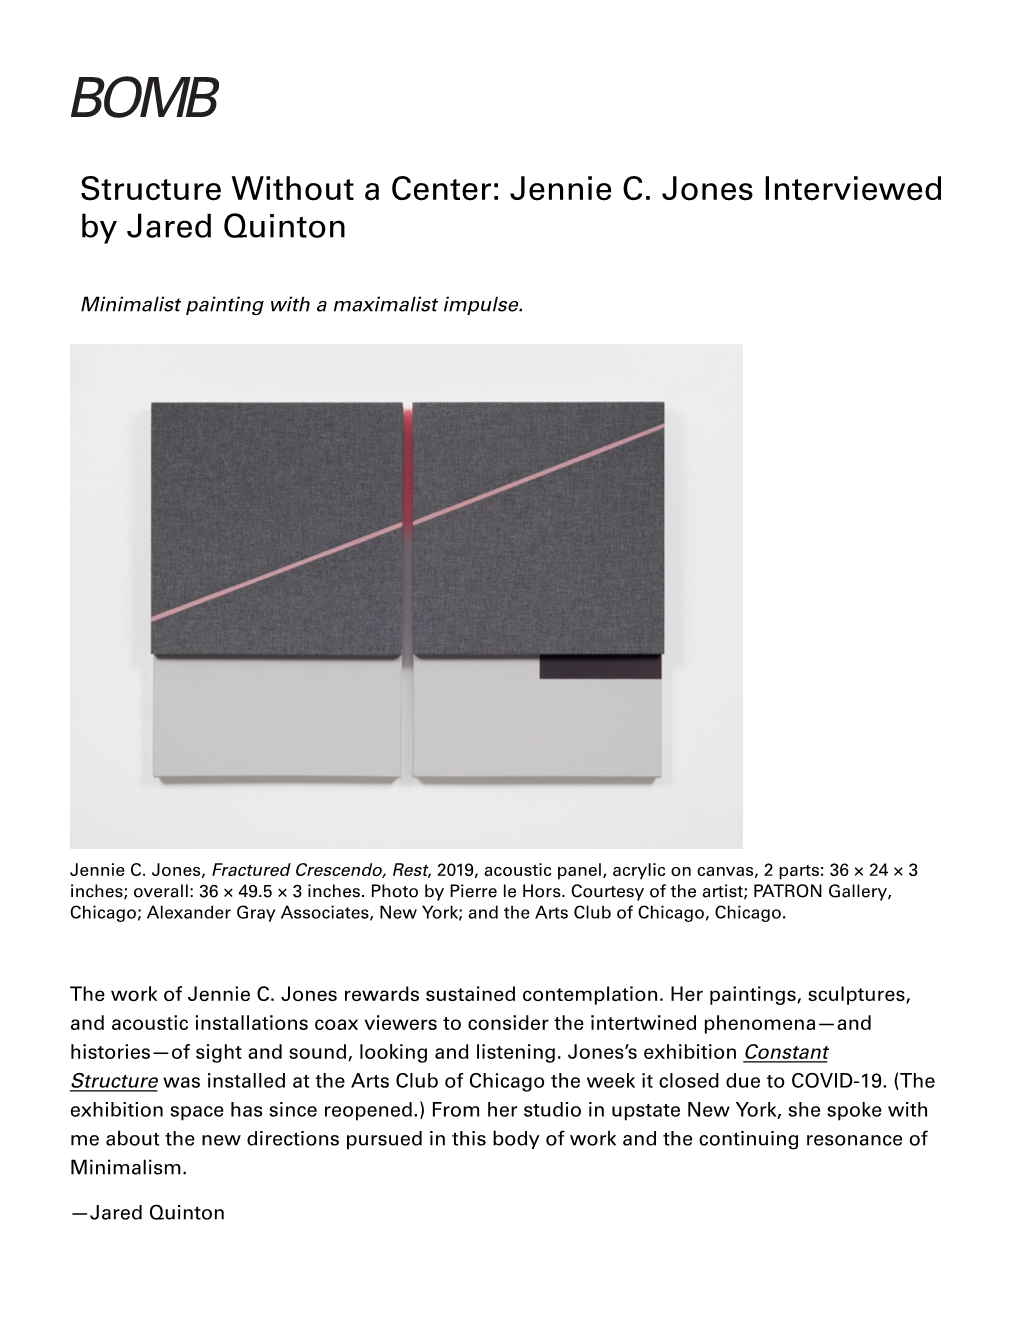 Jennie C. Jones Interviewed by Jared Quinton